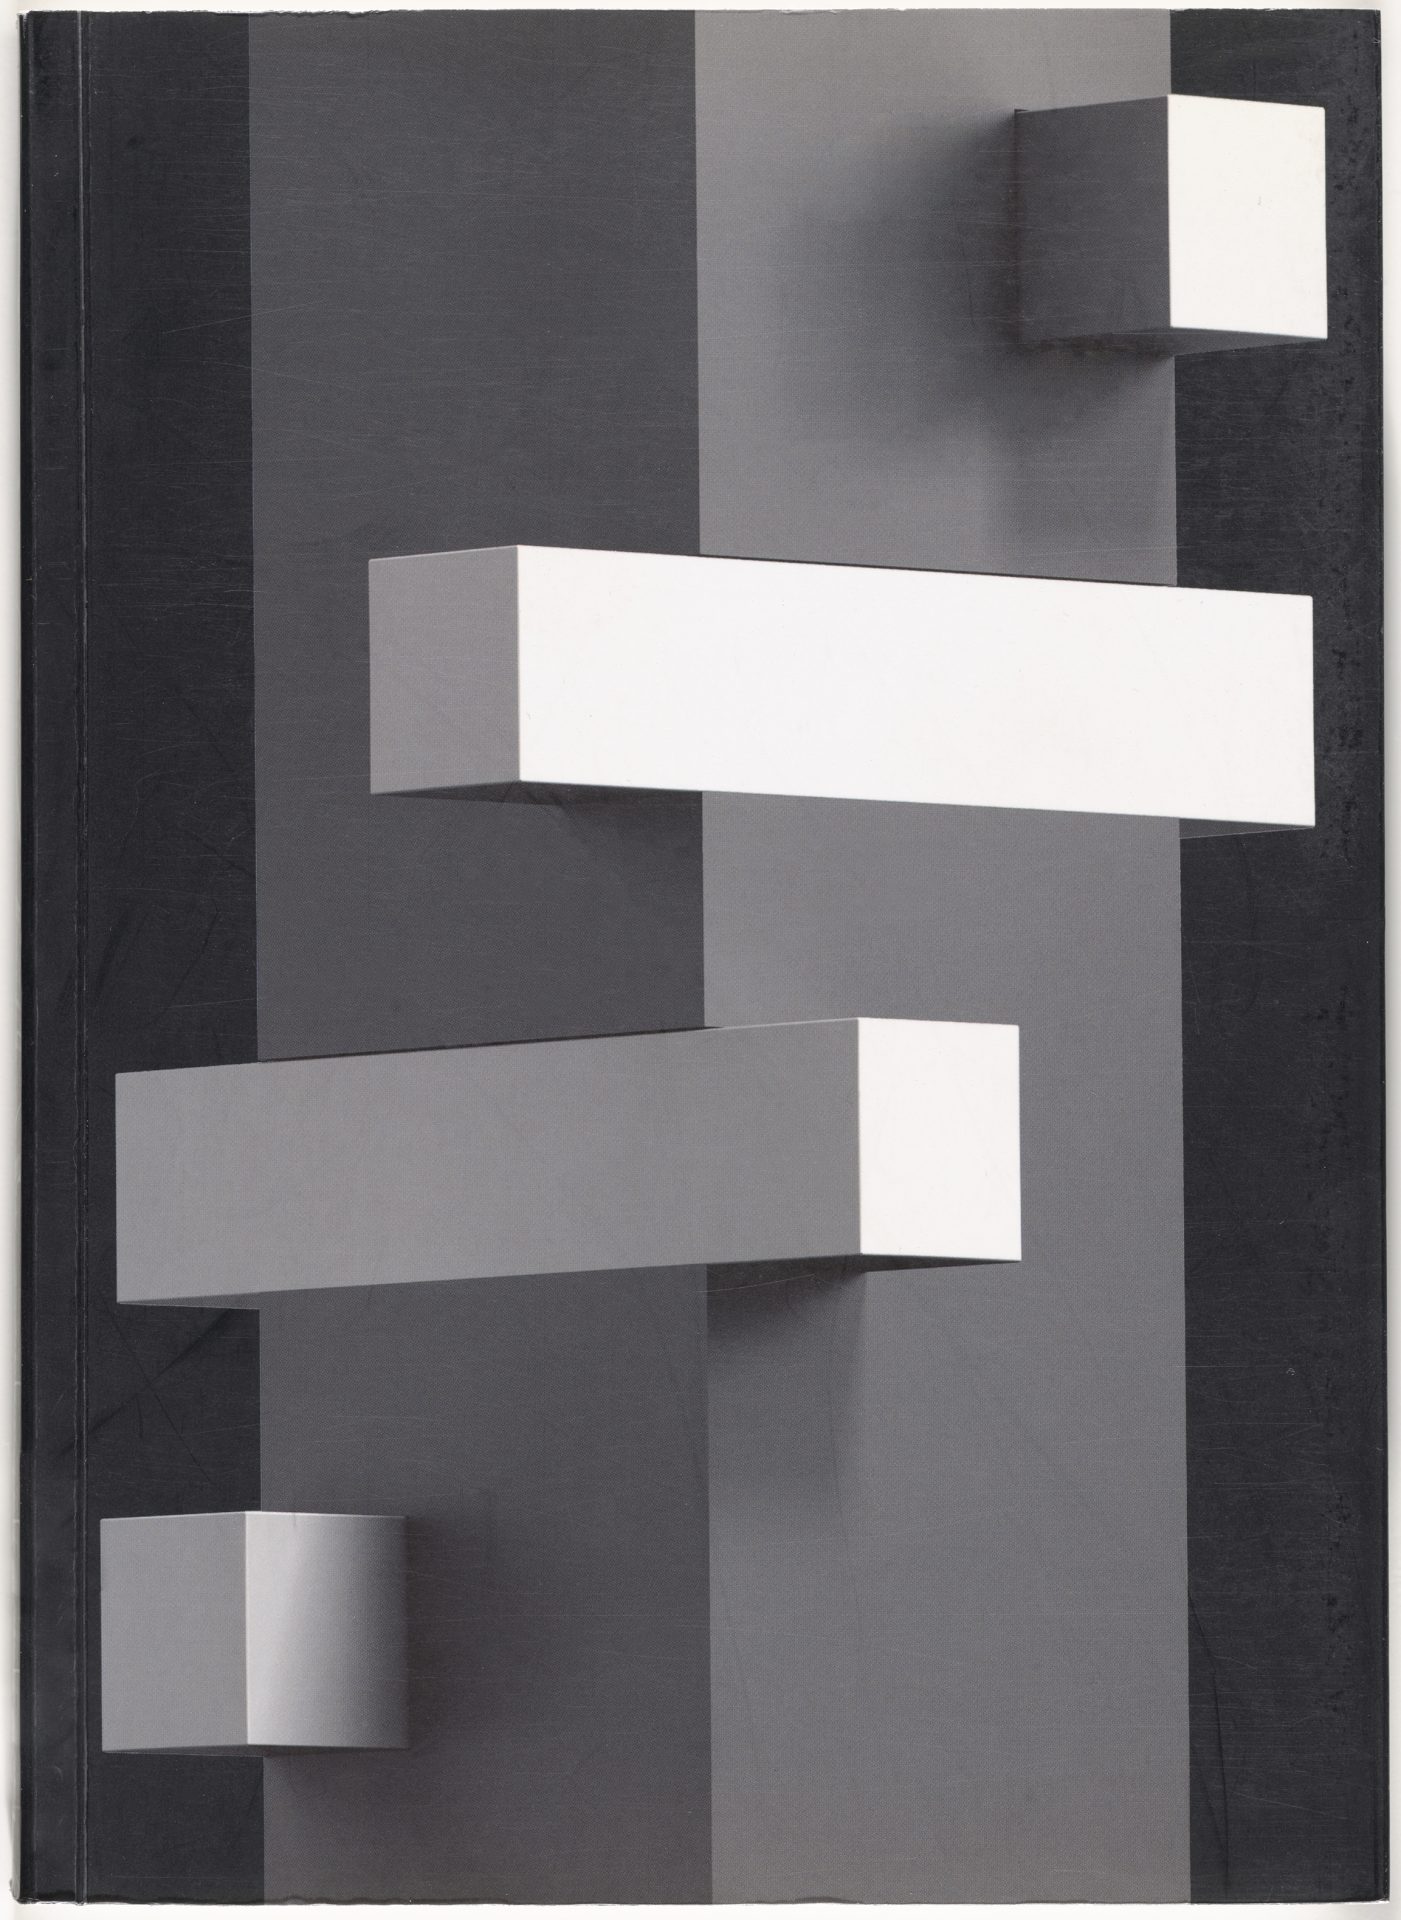 Cover Ausstellungskatalog. Zu sehen ist eine schwarz-weiße Abbildung aus Rechtecken. An eine, rechteckigen Turm befinden sich mehrere weiße horizontale Balken.